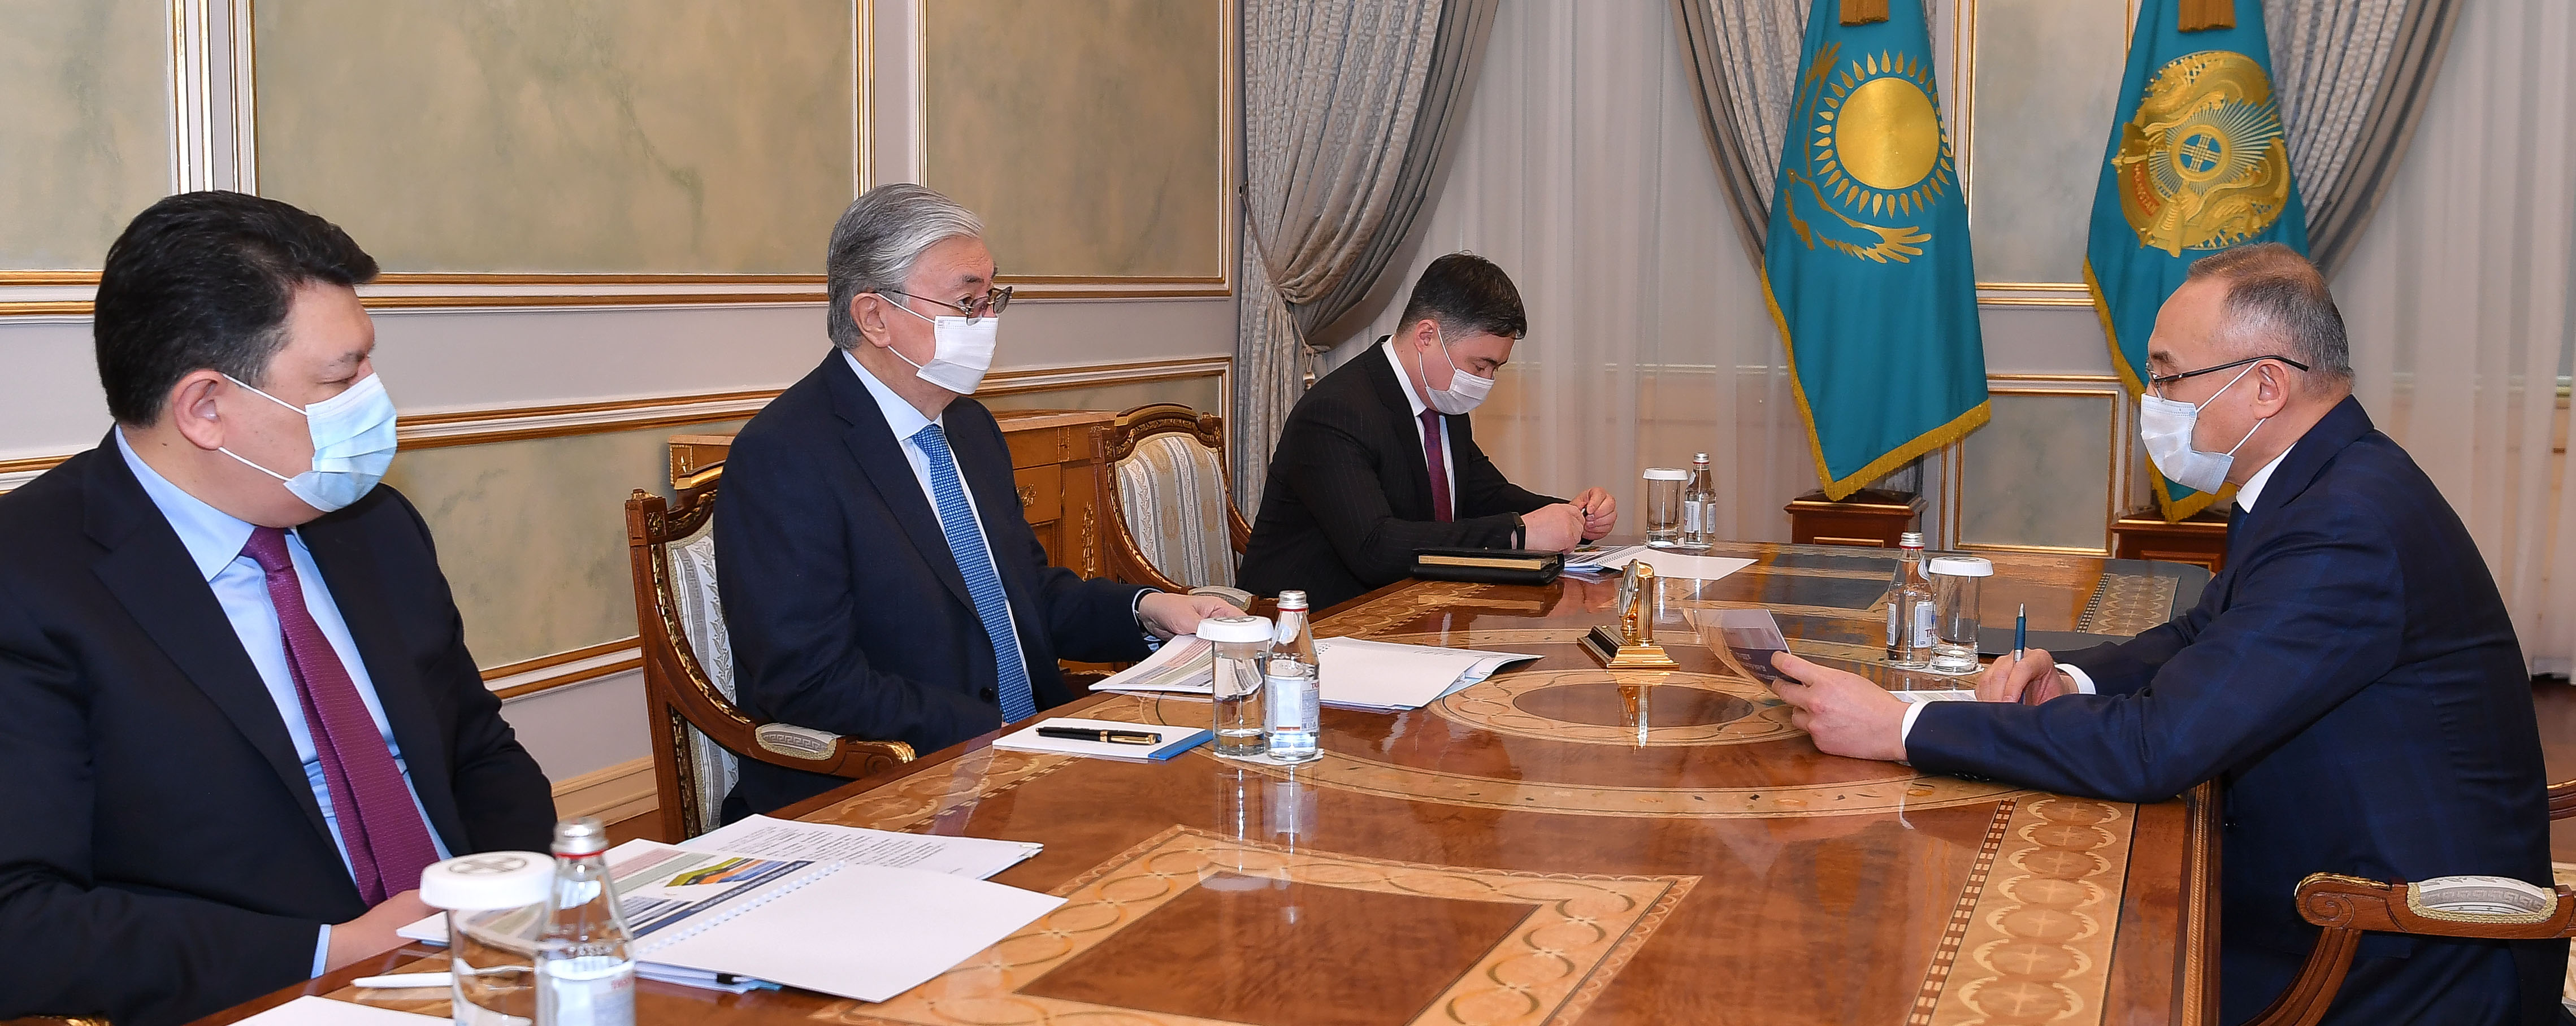 Президент Казахстана принял председателя правления национальной атомной компании "Казатомпром"   